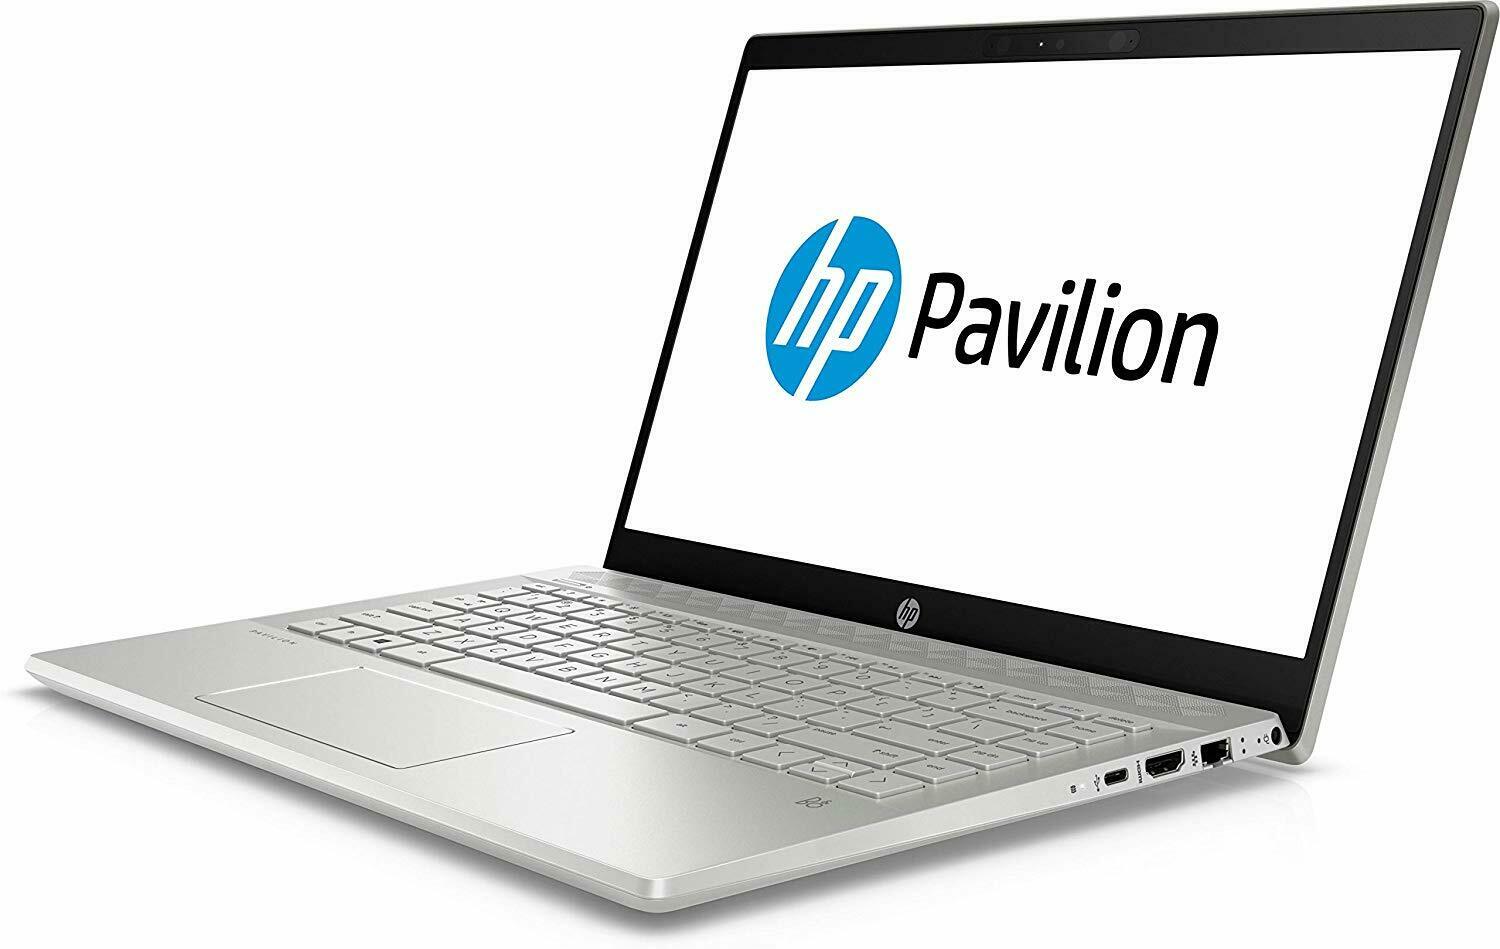 Laptop HP 240 G6 Intel Core i5 8250u, 8gb en ram, 1tb en disco duro, 14", windows 10